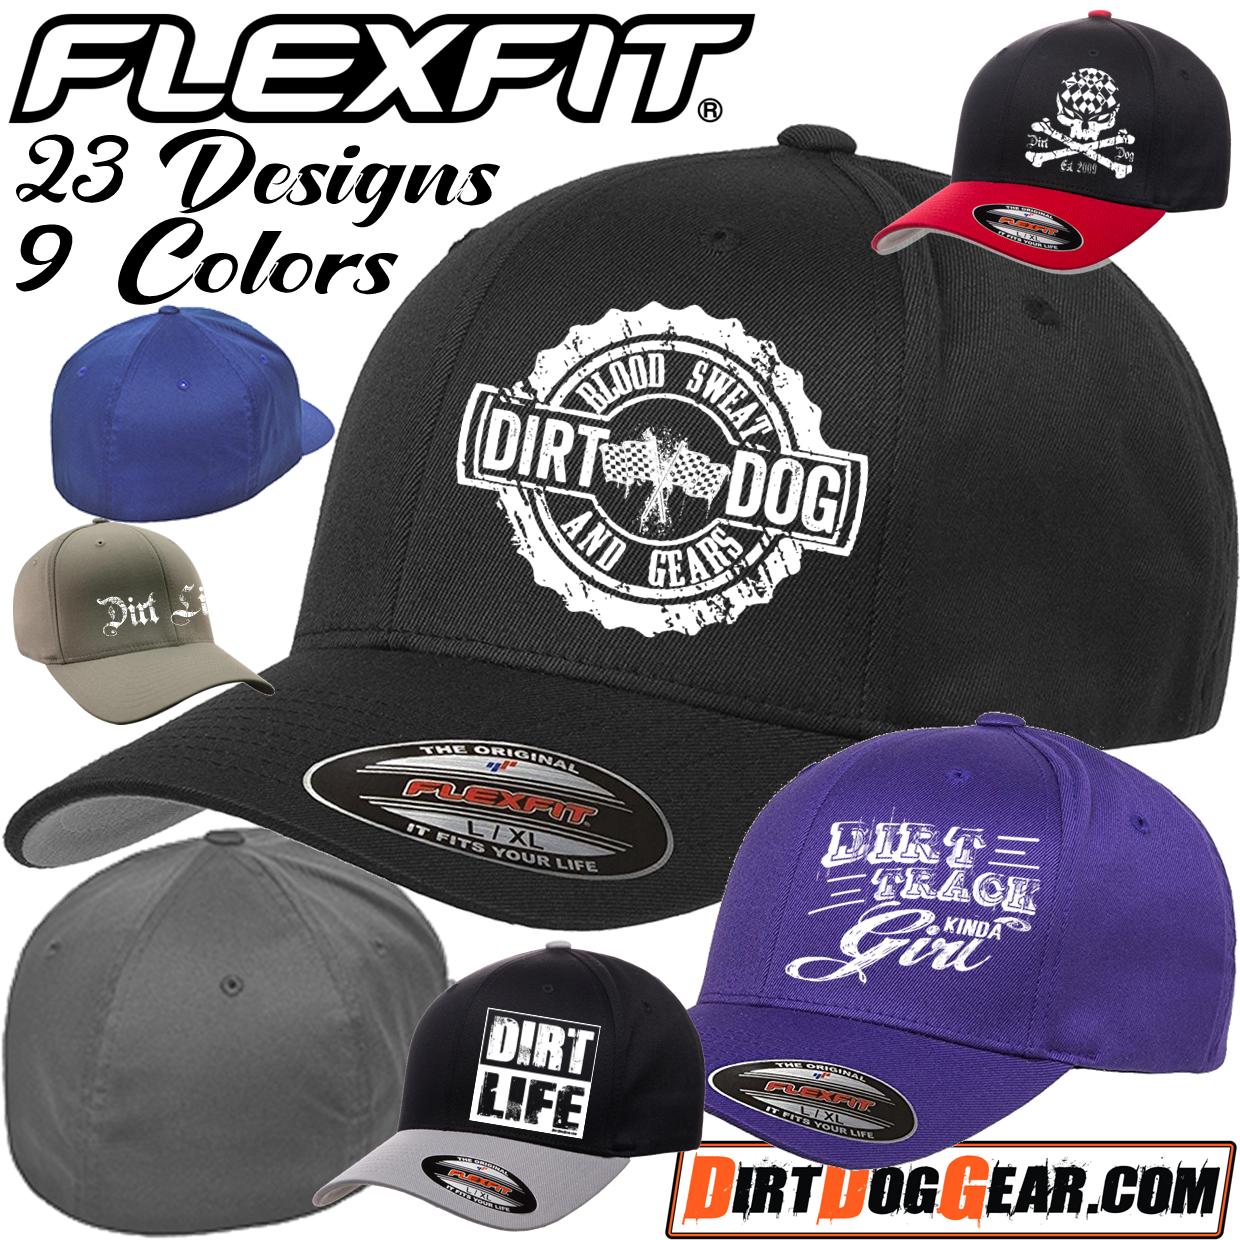 Hat 3 - Flexfit® Wooly 6 Panel